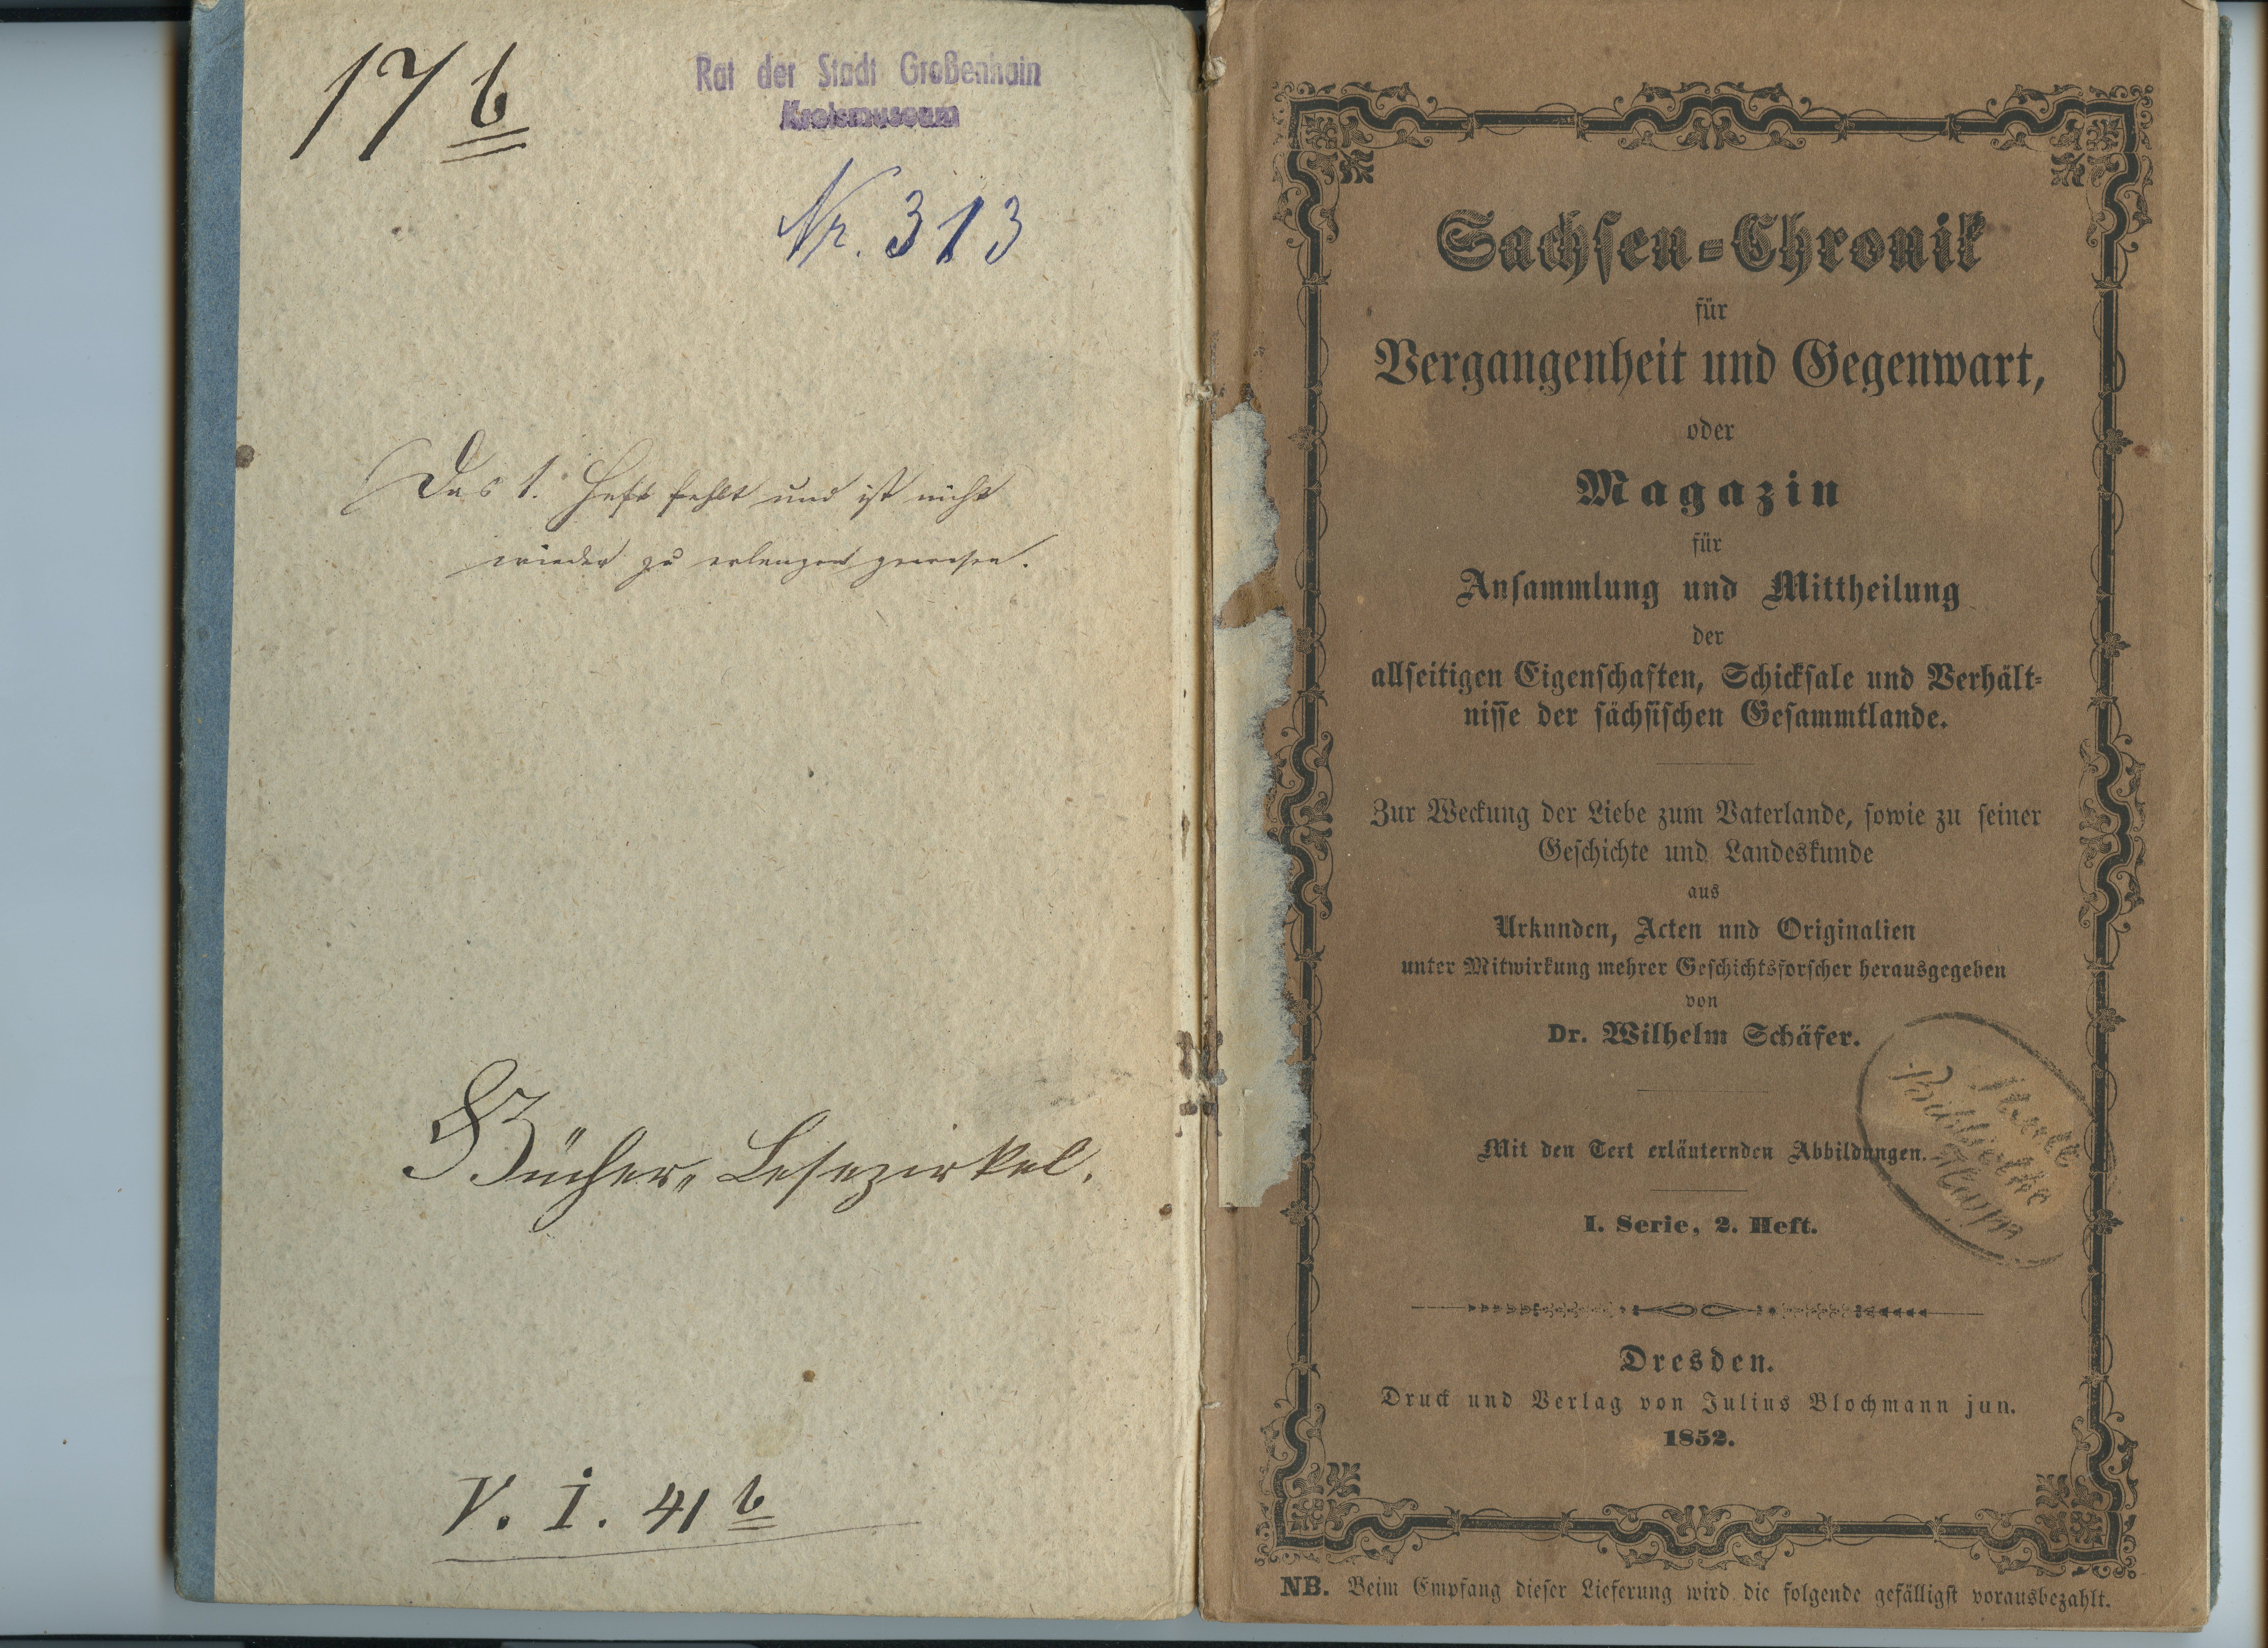 Schäfer, Wilhelm (Hrsg.): Sachsen-Chronik für Vergangenheit und Gegenwart, I/2 1852 (Museum Alte Lateinschule CC BY-NC-SA)